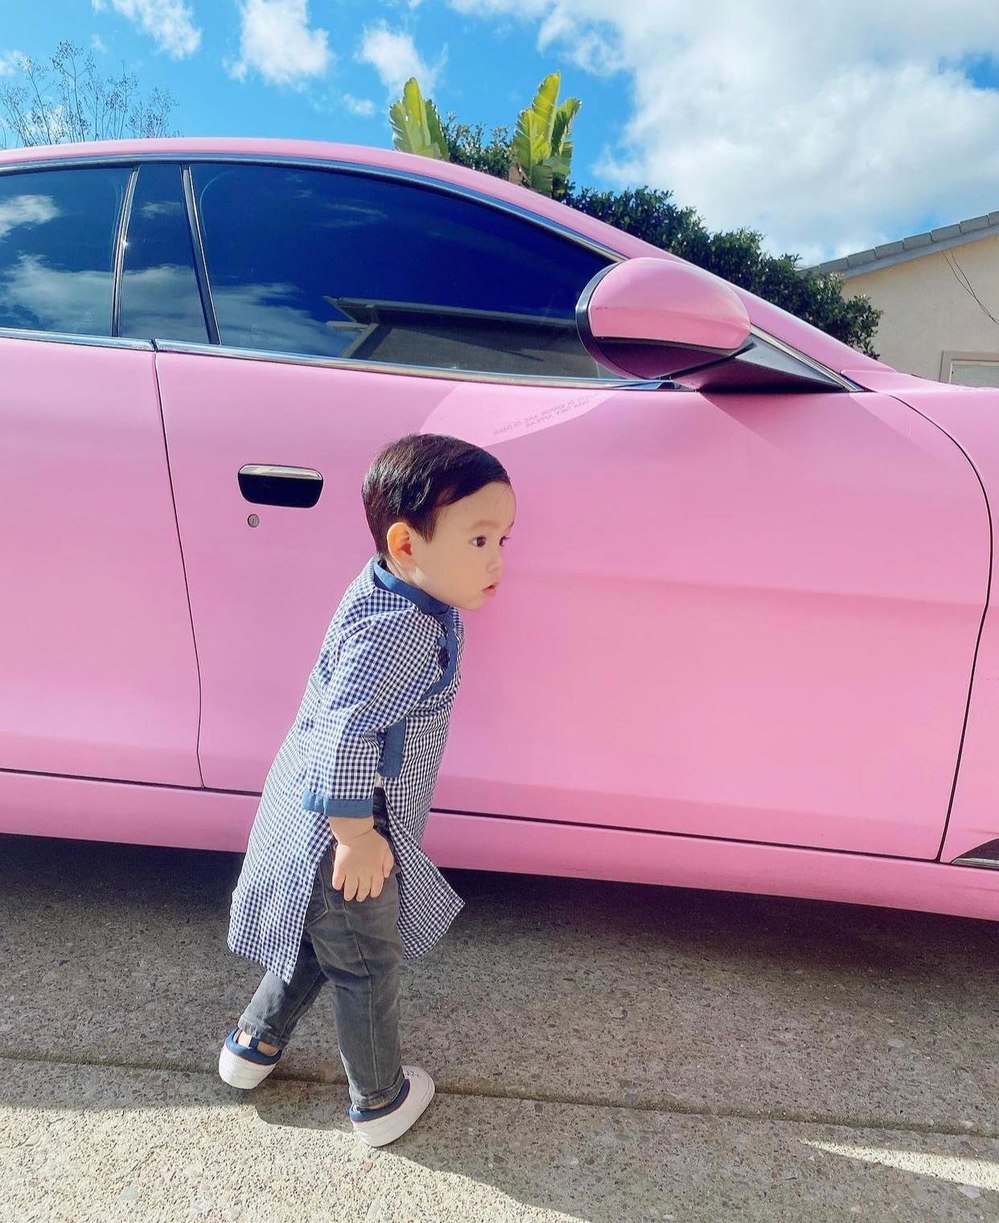  
Cậu bé bên chiếc siêu xe hồng của mẹ. (Ảnh: IG maximusm1223)